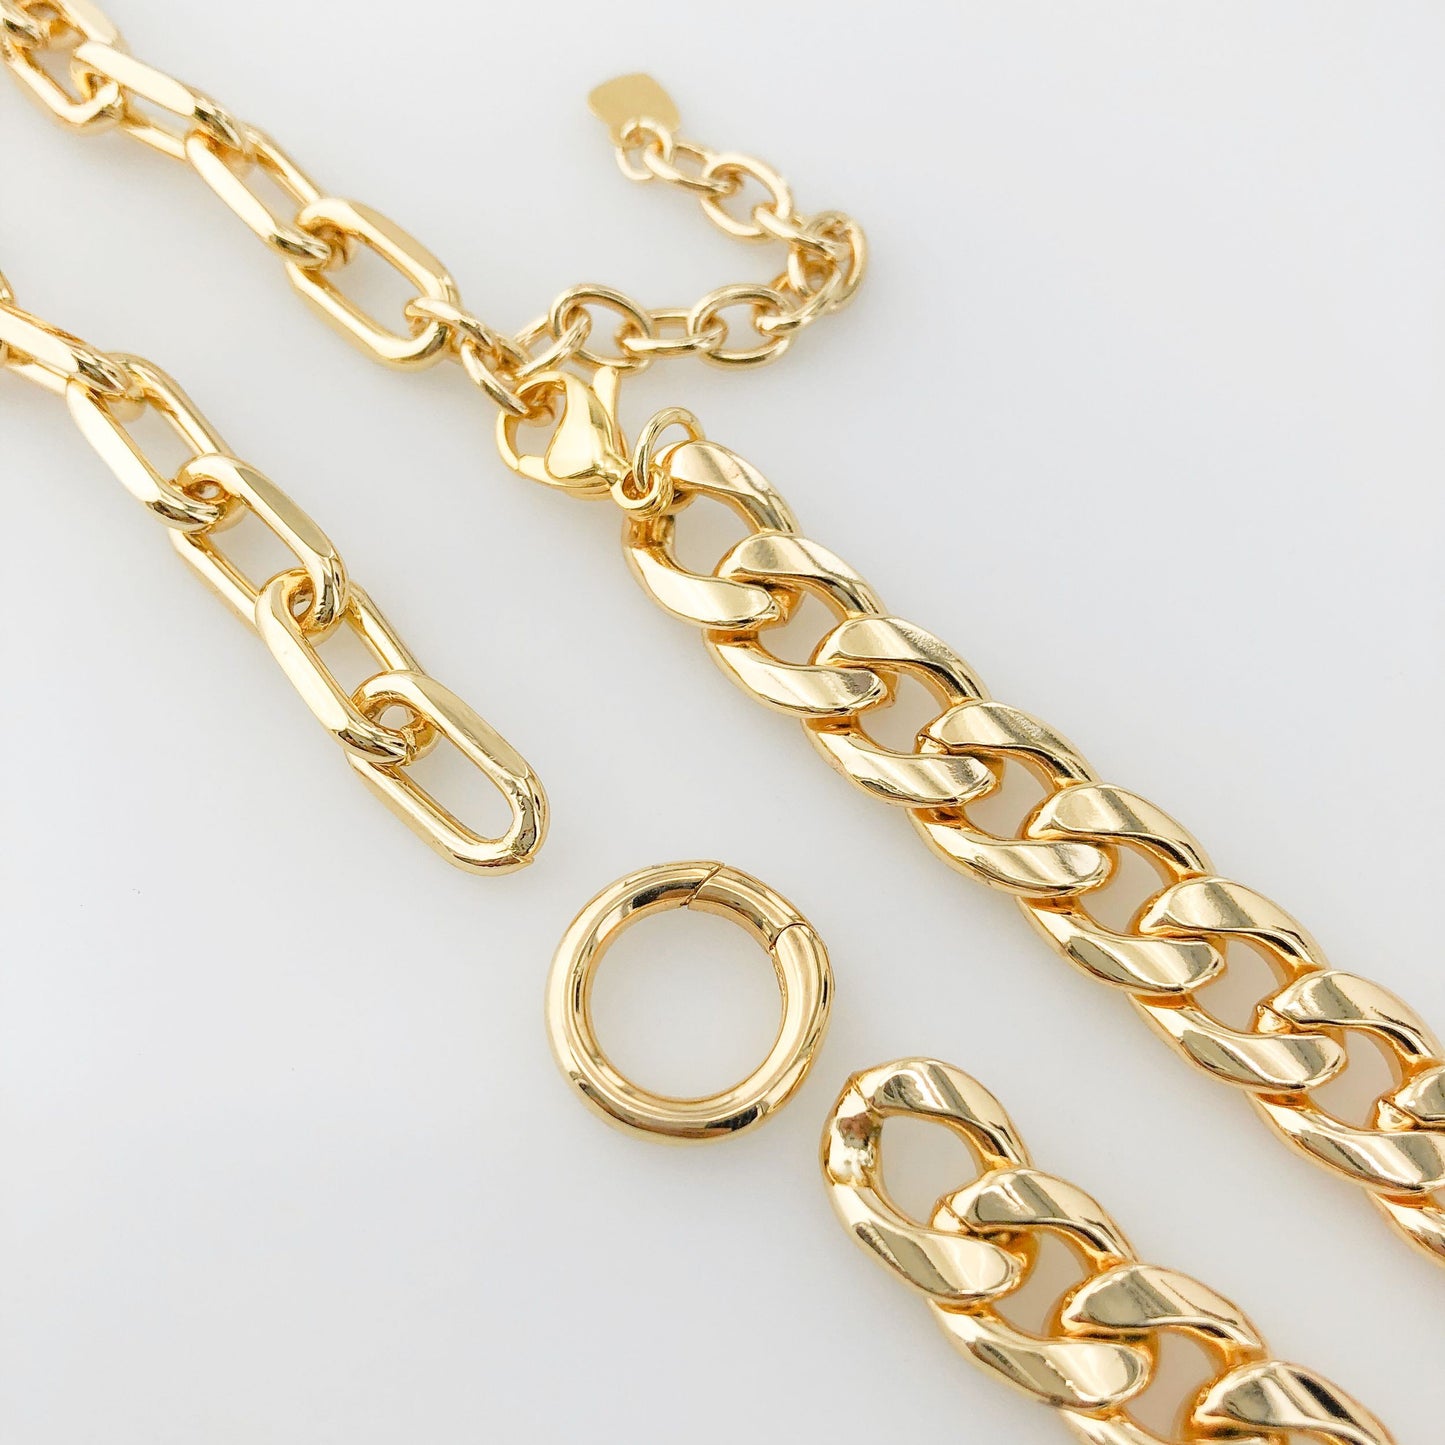 Dual Wear Double Chain Necklace or Wrap Bracelet